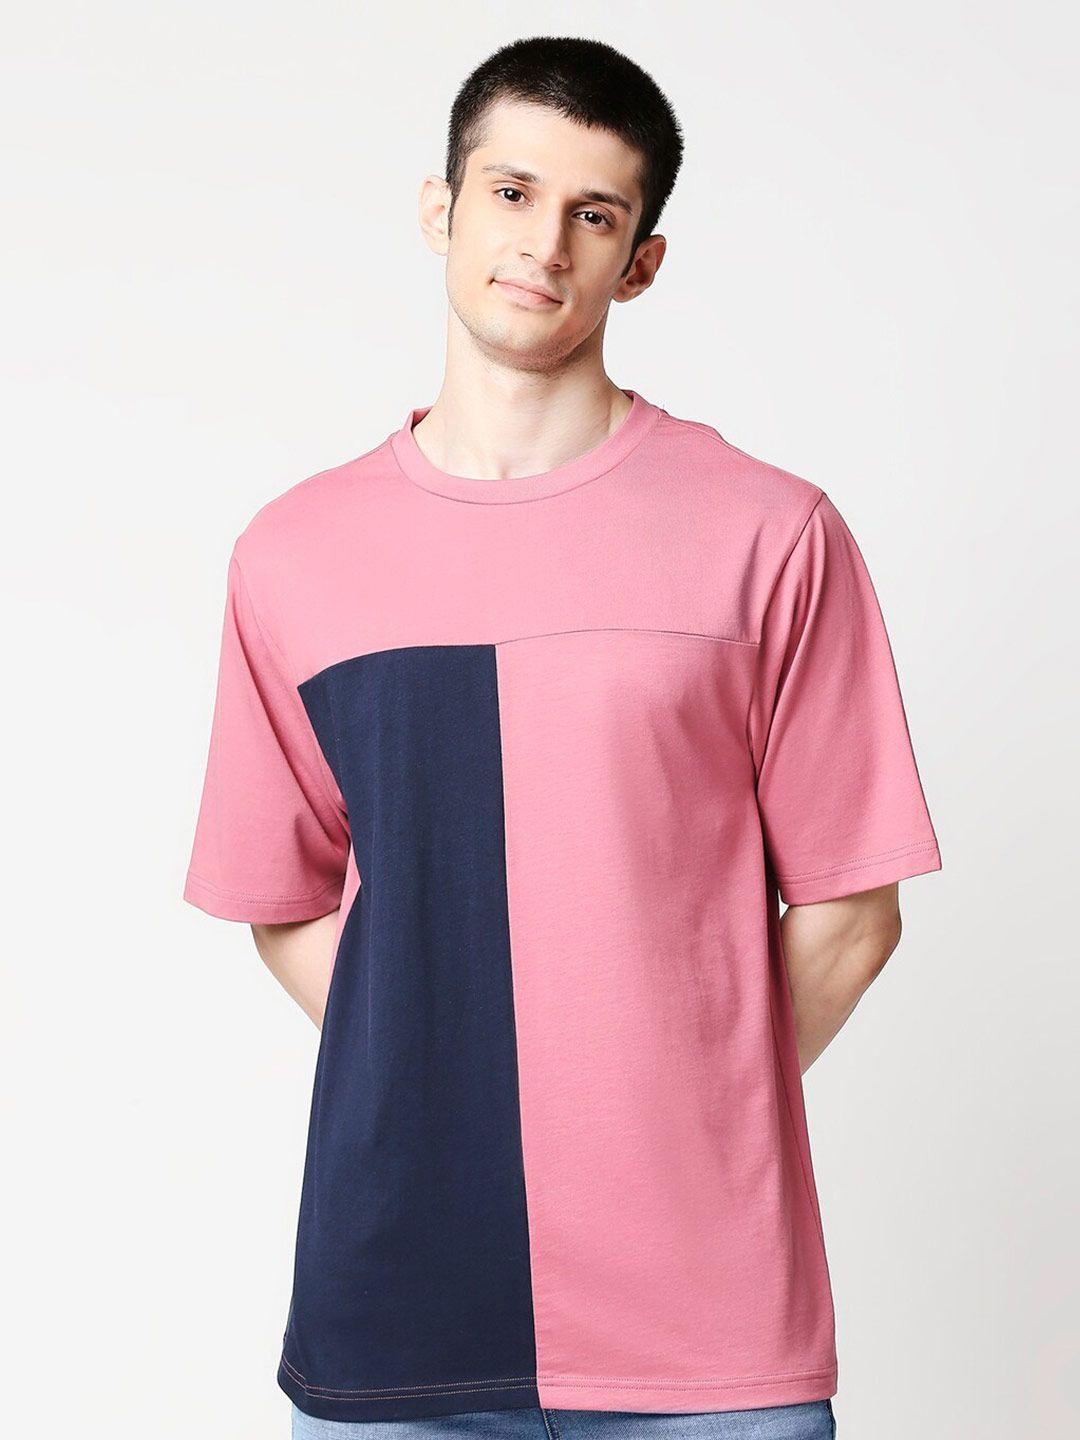 bewakoof men pink & blue colourblocked t-shirt